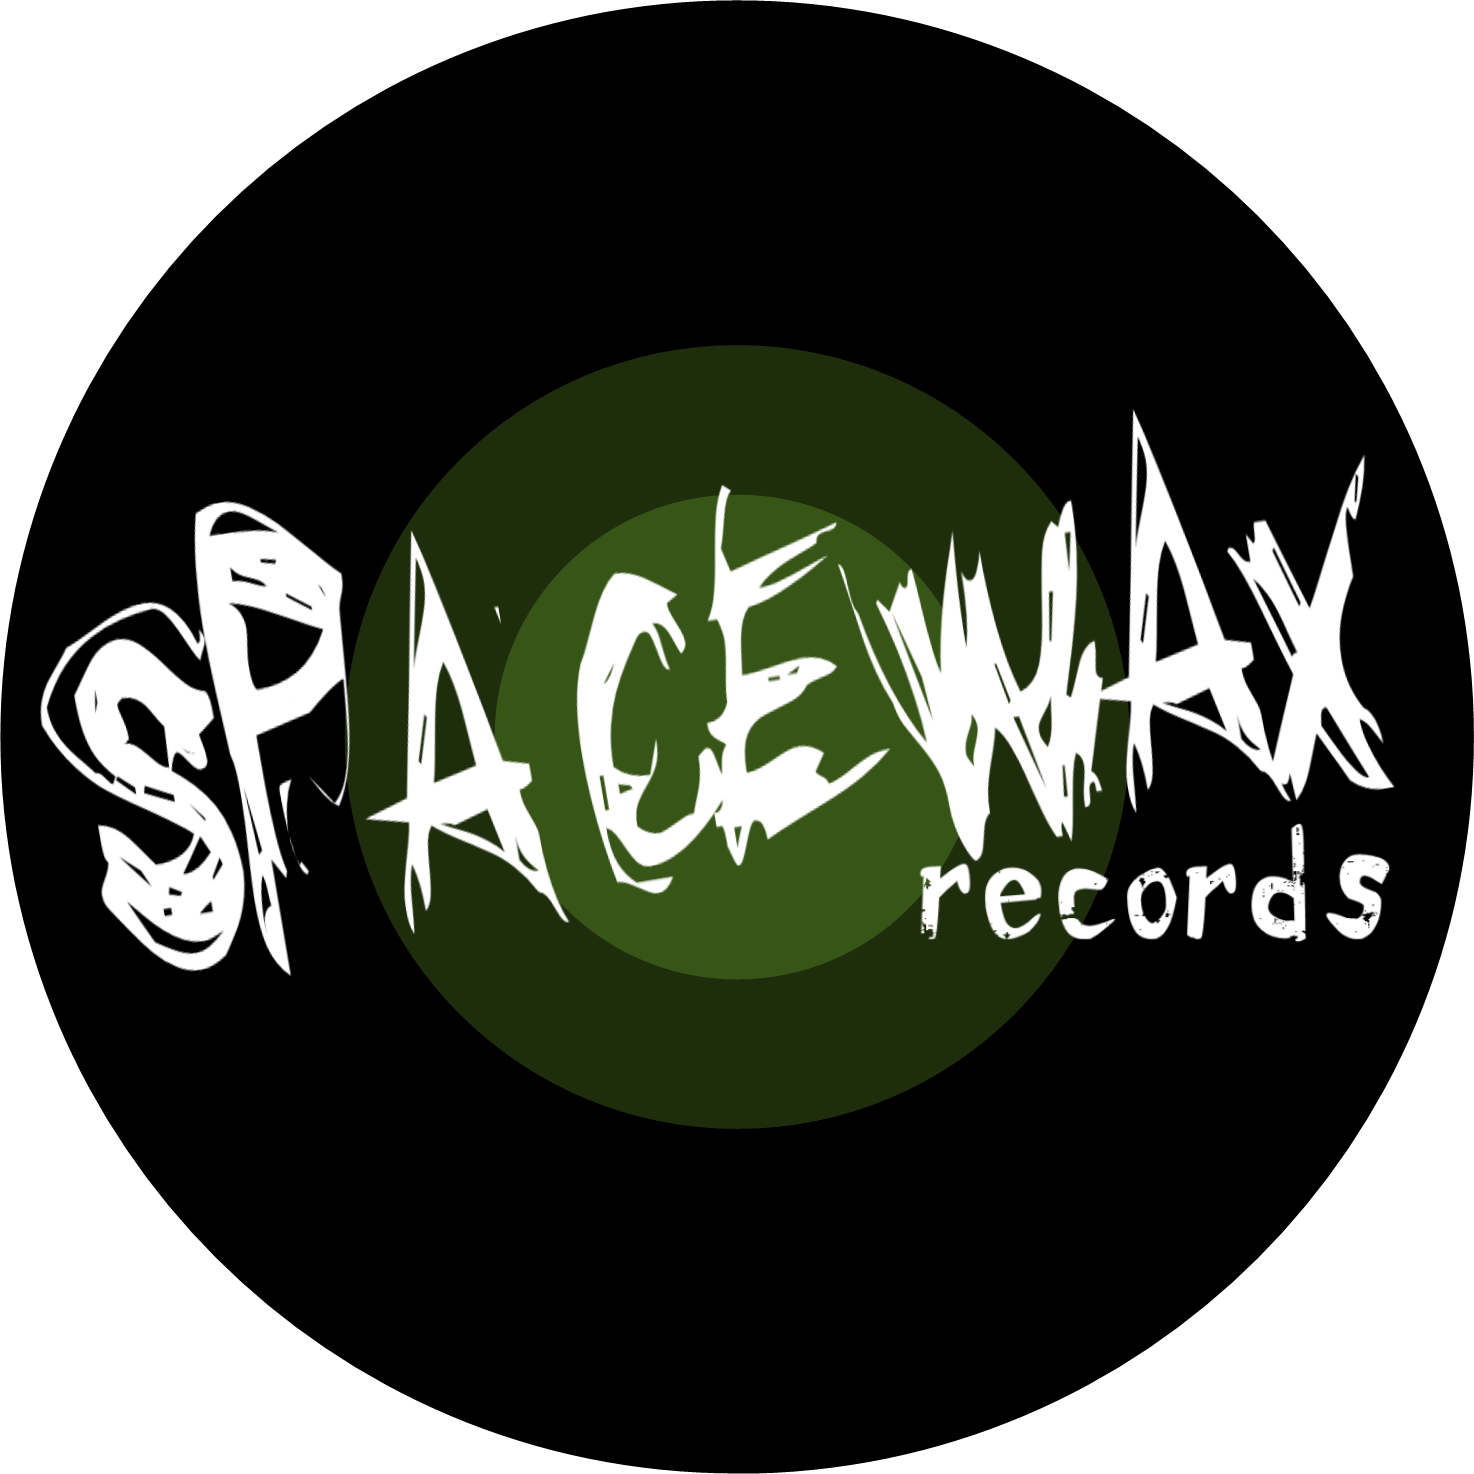 Spacewax Records